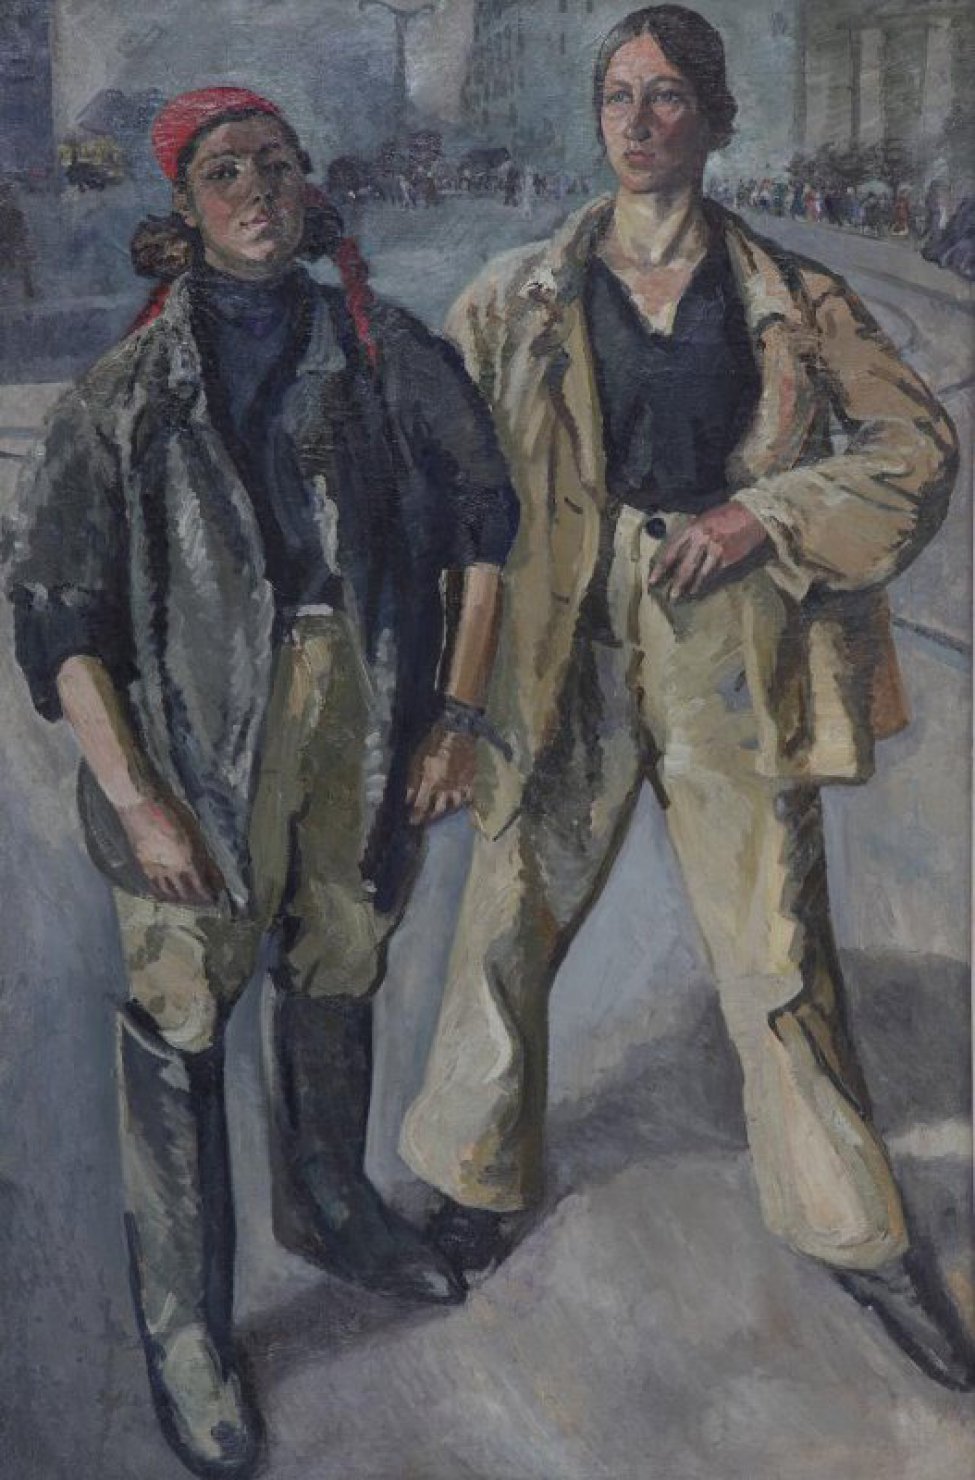 Изображены две женские фигуры в рост, в рабочей одежде.